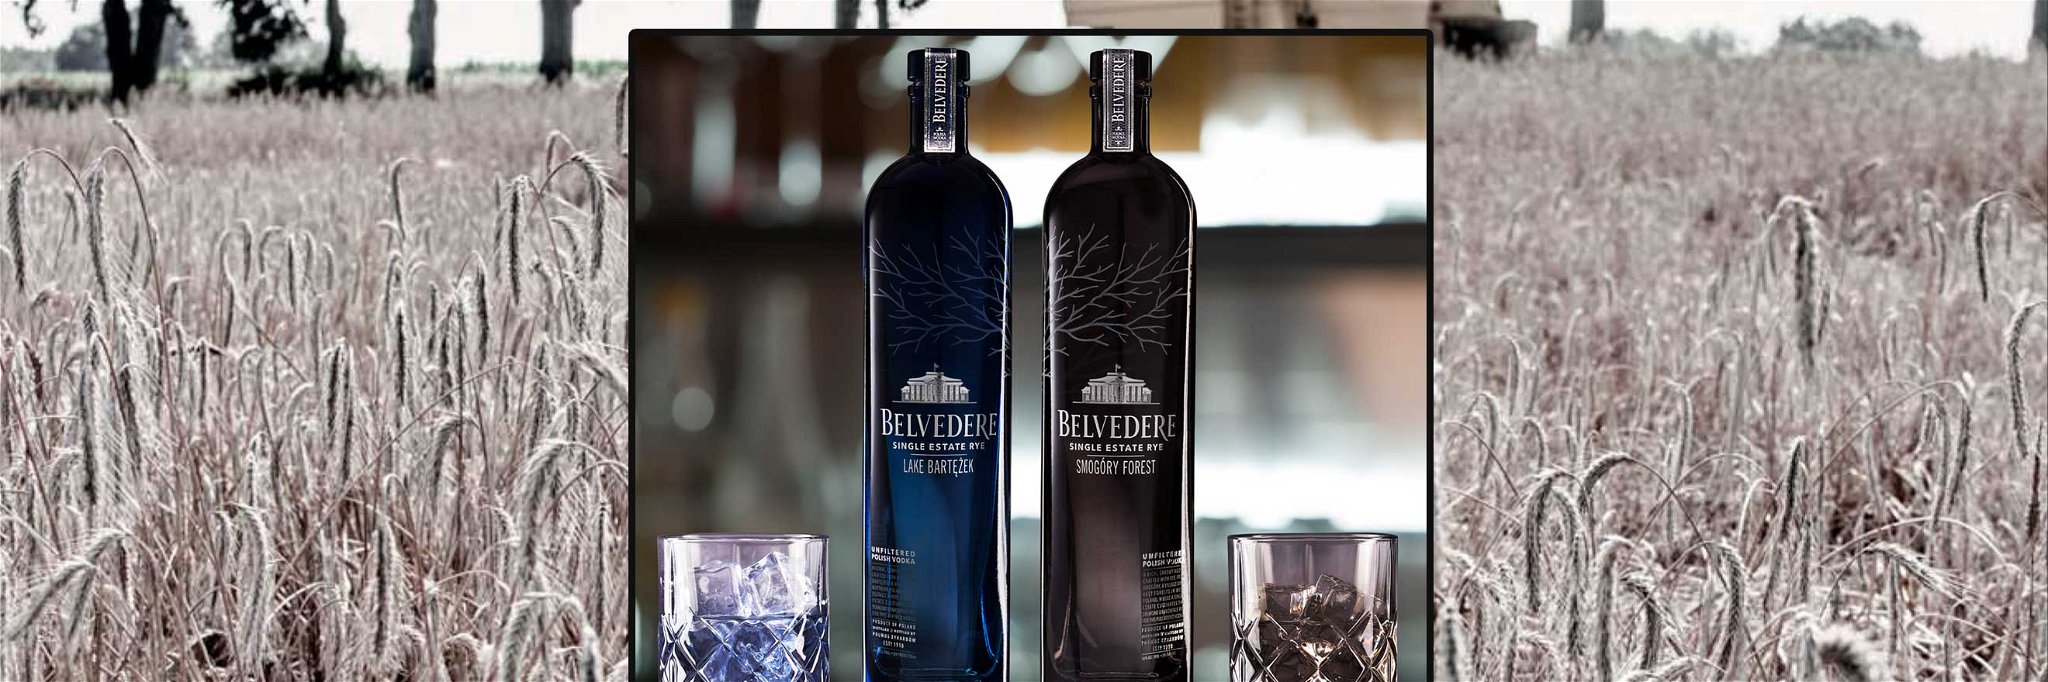 Belvedere Vodka hat sein Portfolio um zwei Single Estate Rye Produkte erweitert.